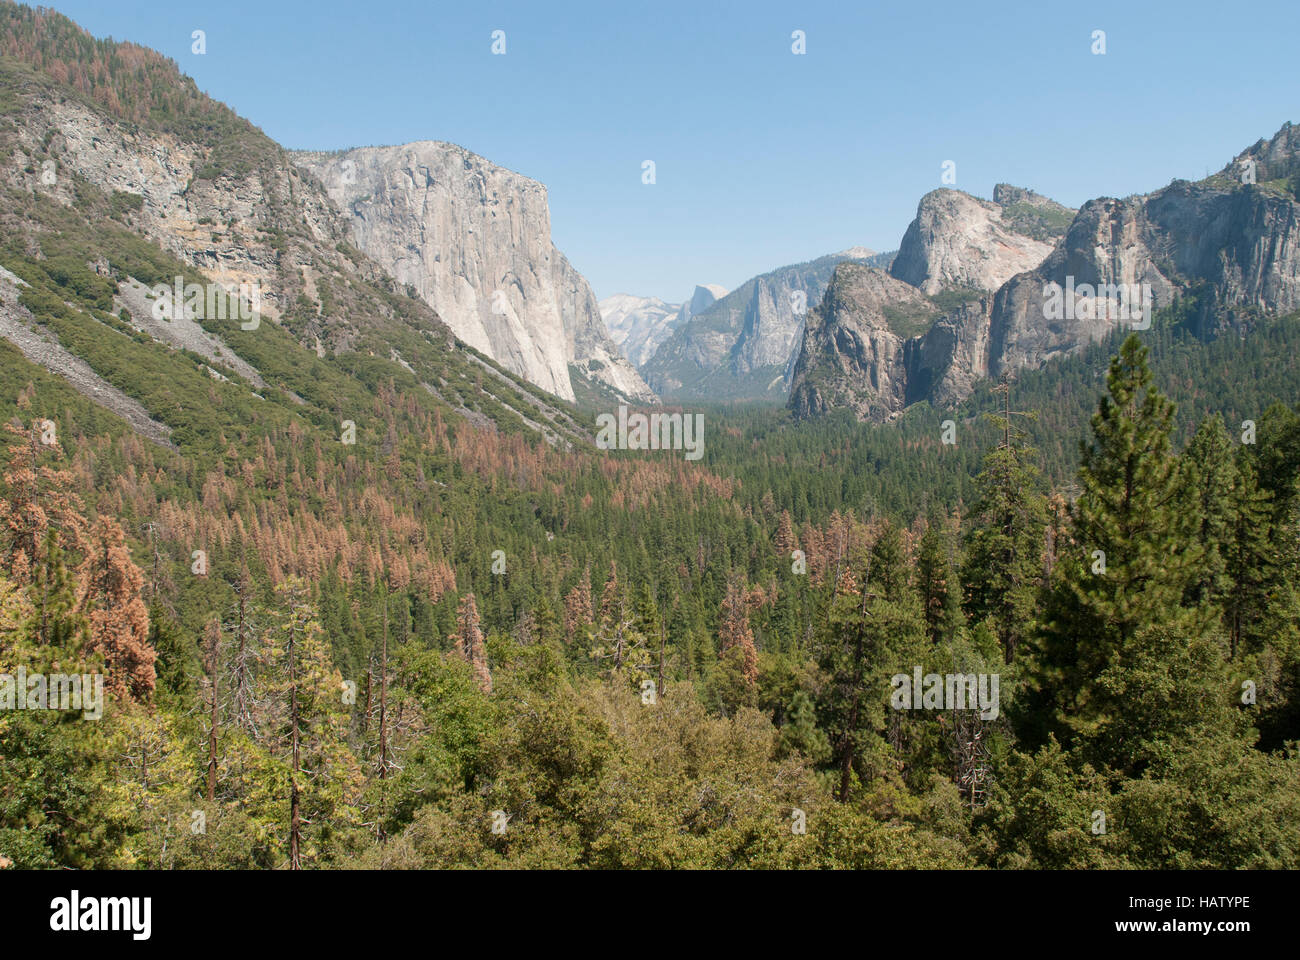 Vista del Valle Yosemite muestra pinos dorados por la sequía y la corteza escarabajo daños. Foto de stock